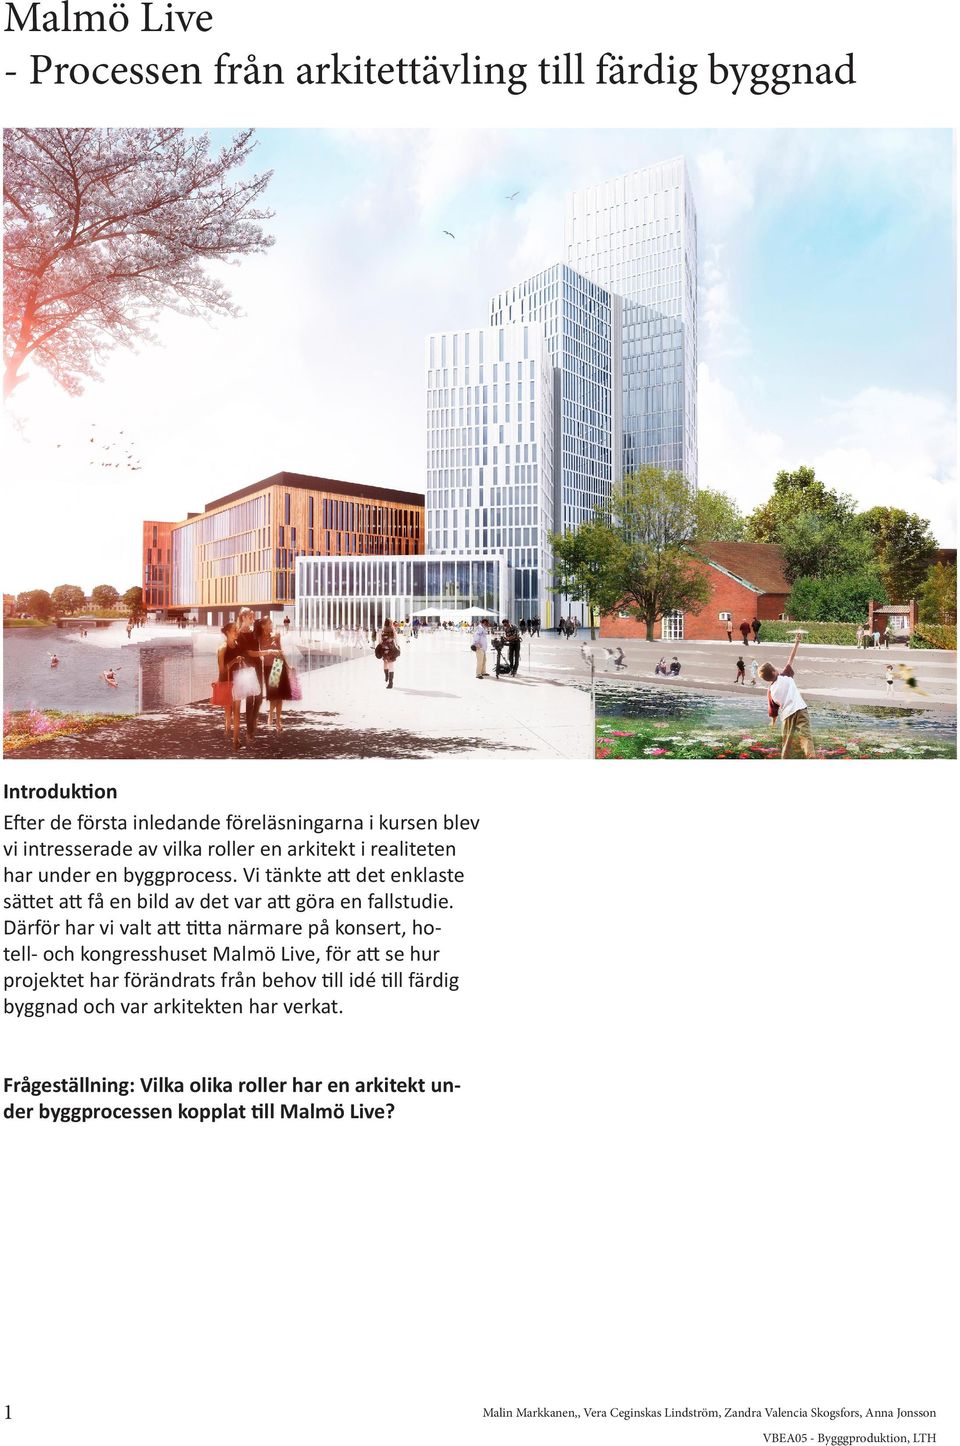 Därför har vi valt att titta närmare på konsert, hotell- och kongresshuset Malmö Live, för att se hur projektet har förändrats från behov till idé till färdig byggnad